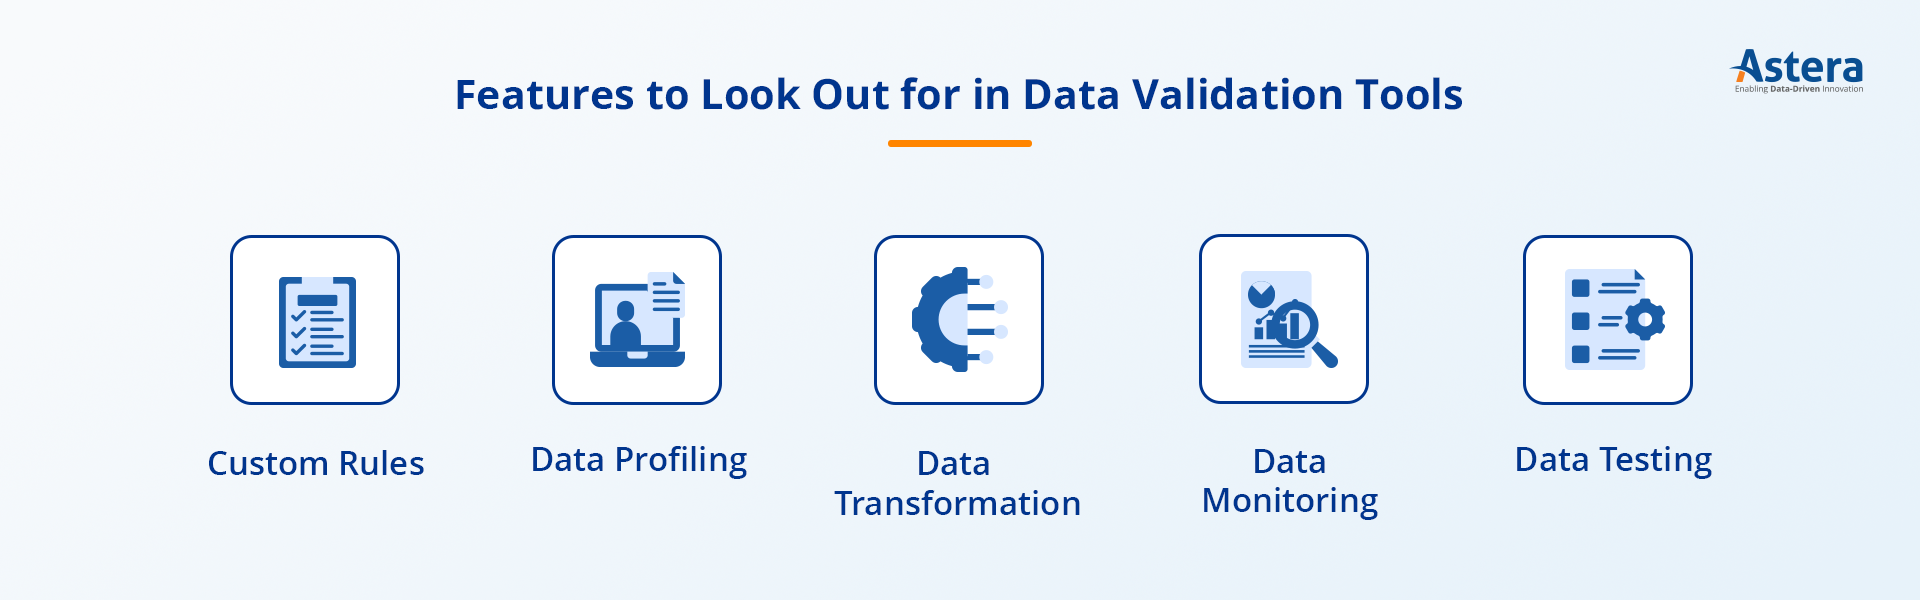 Funciones de las herramientas de validación de datos